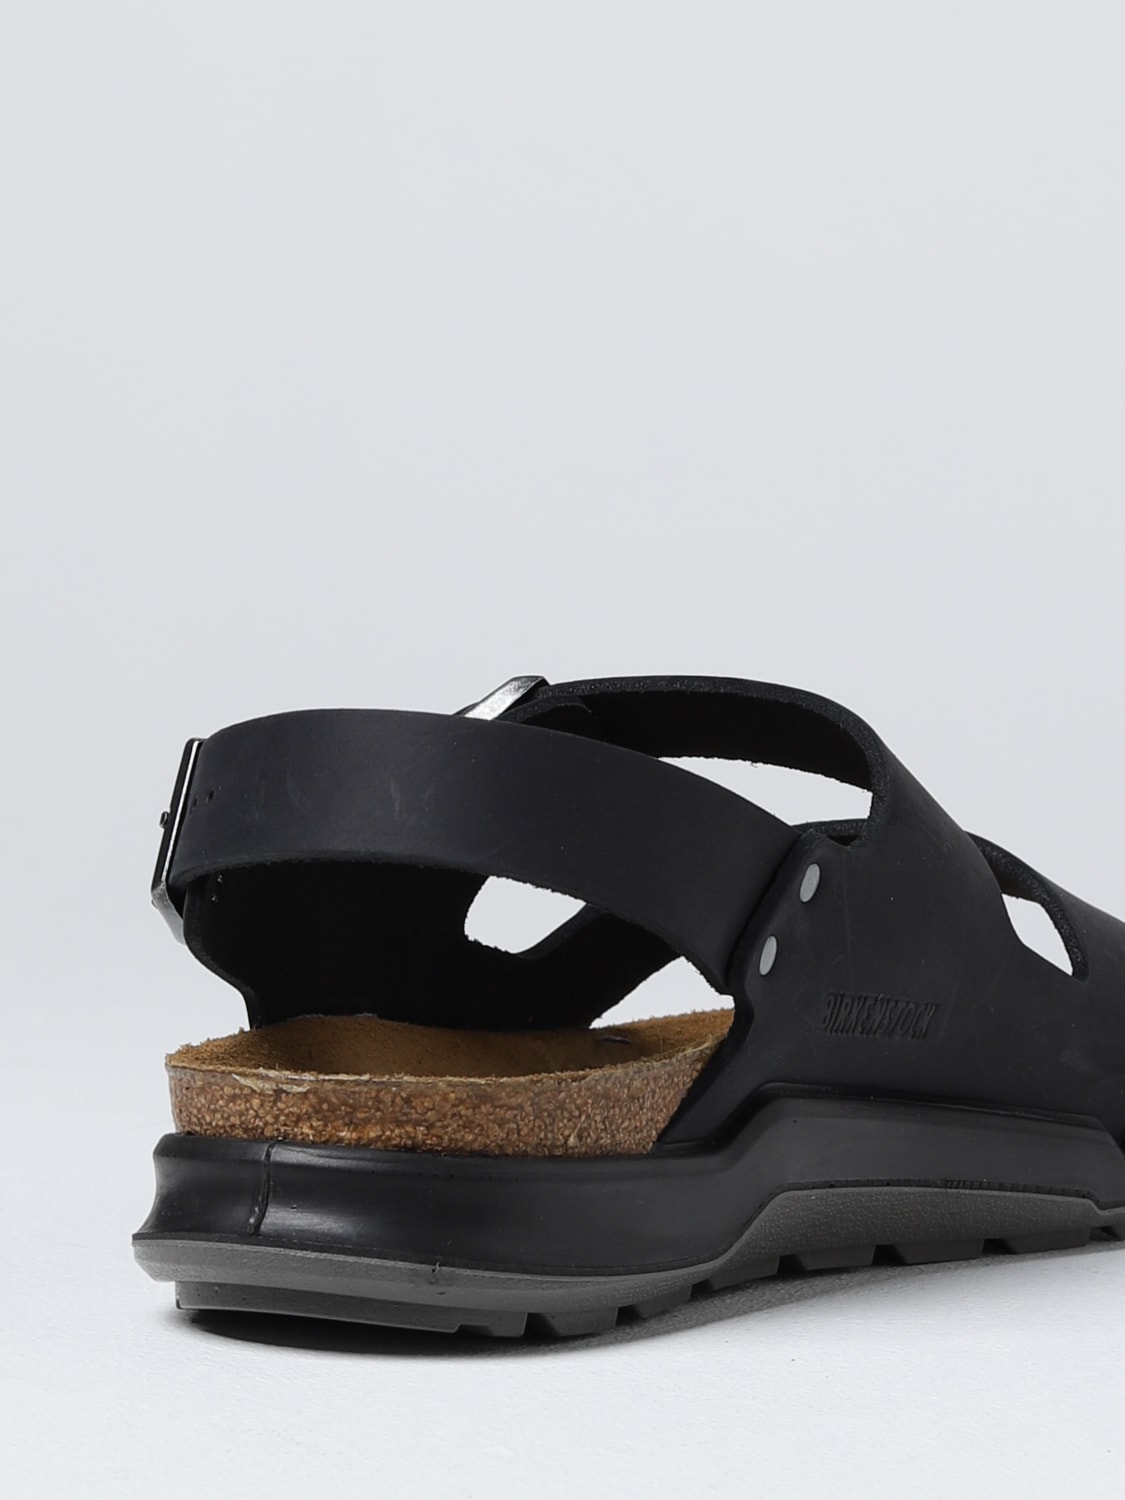 sandals for man - Black | sandals 1018426 online on